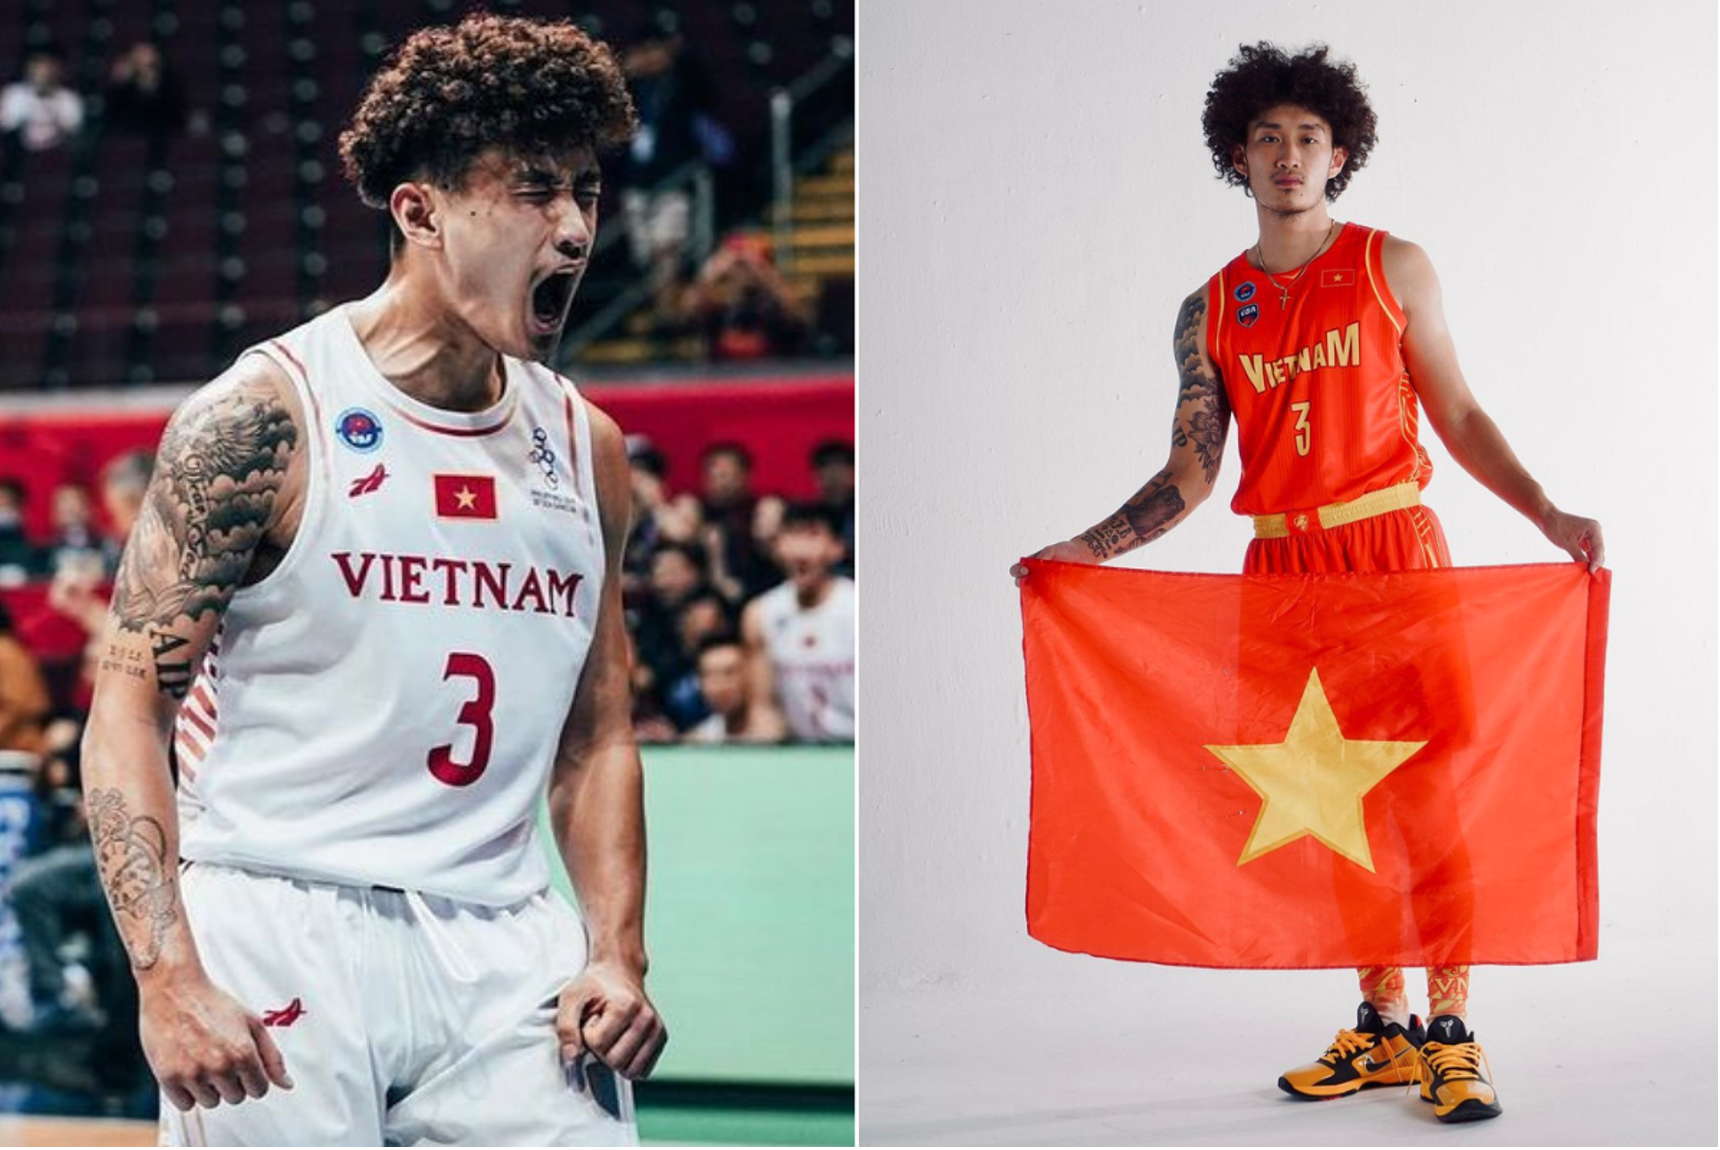 Vietnamese-born player works to pursue basketball in Vietnam